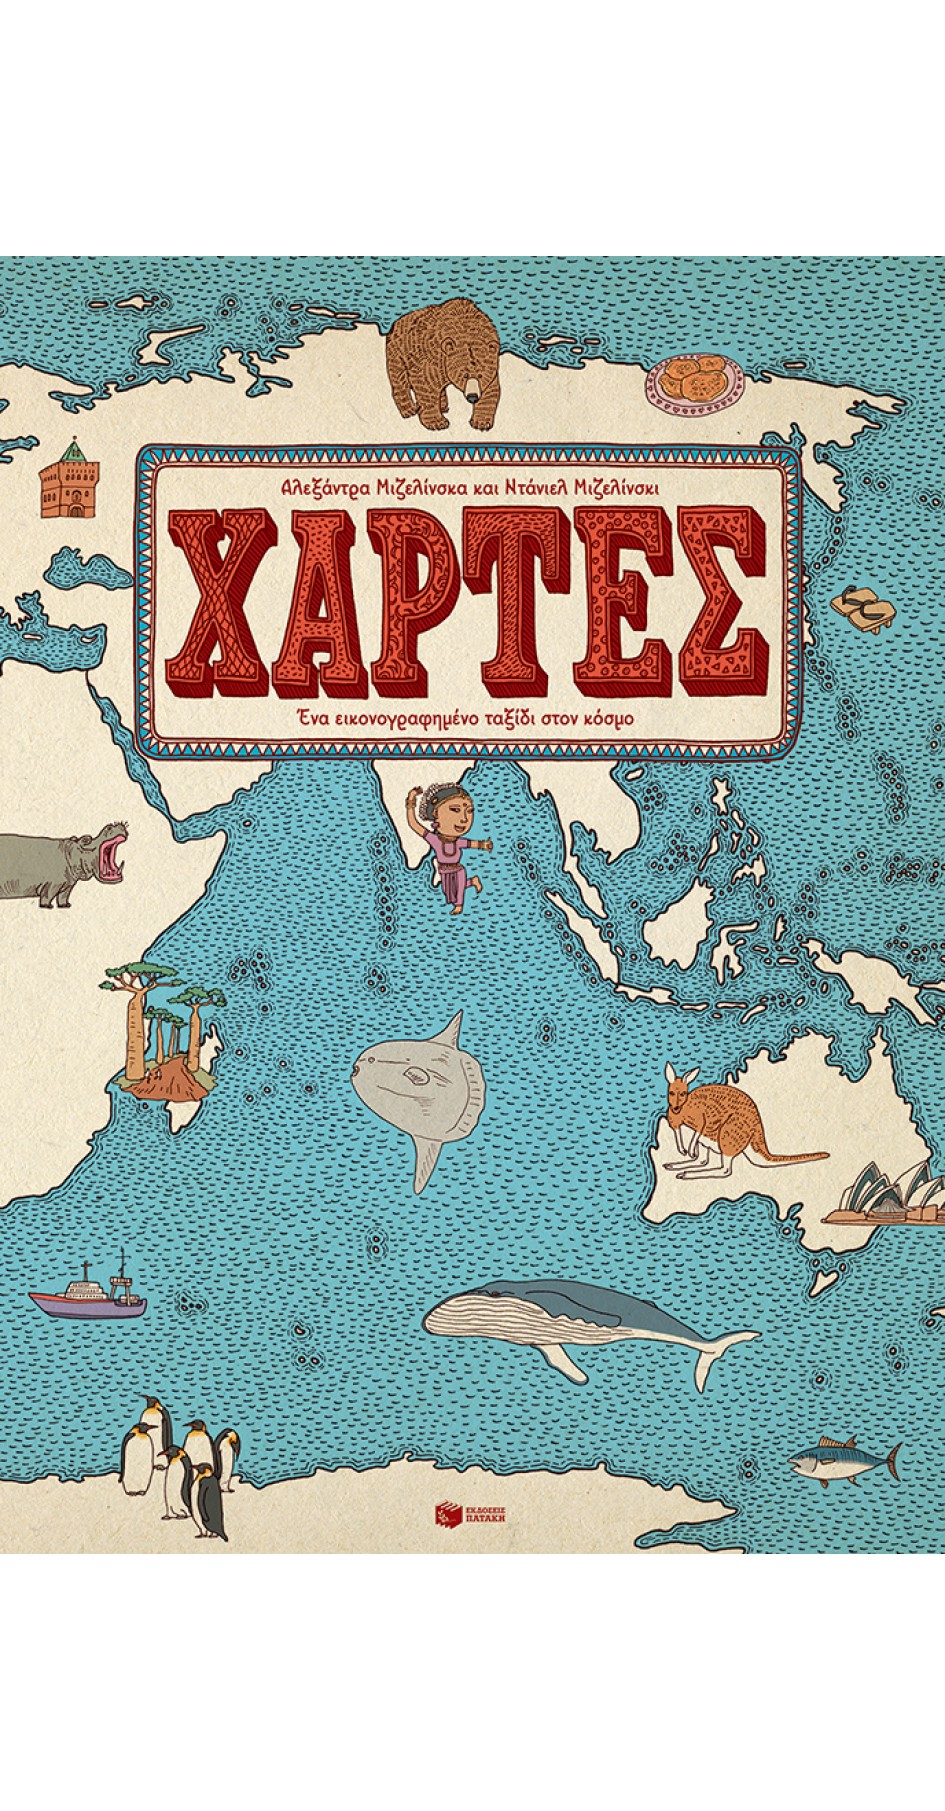 Χάρτες, ένα εικονογραφημένο ταξίδι στον κόσμο (book in Greek)